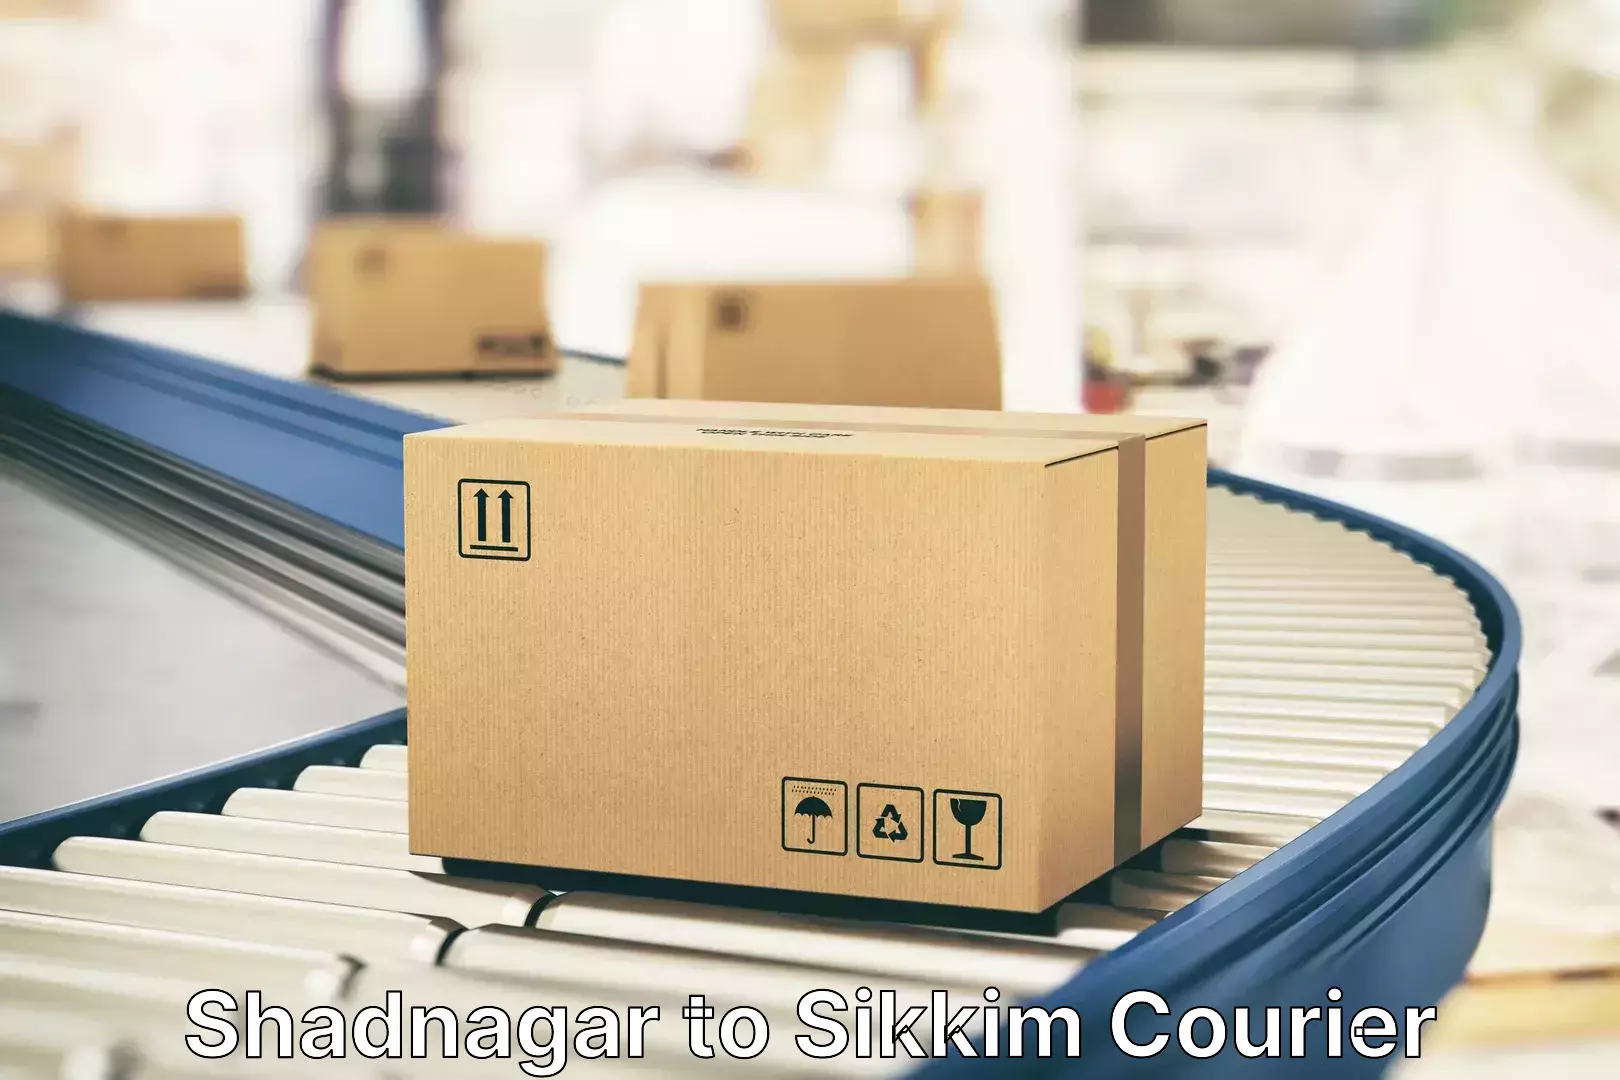 Baggage transport innovation Shadnagar to NIT Sikkim